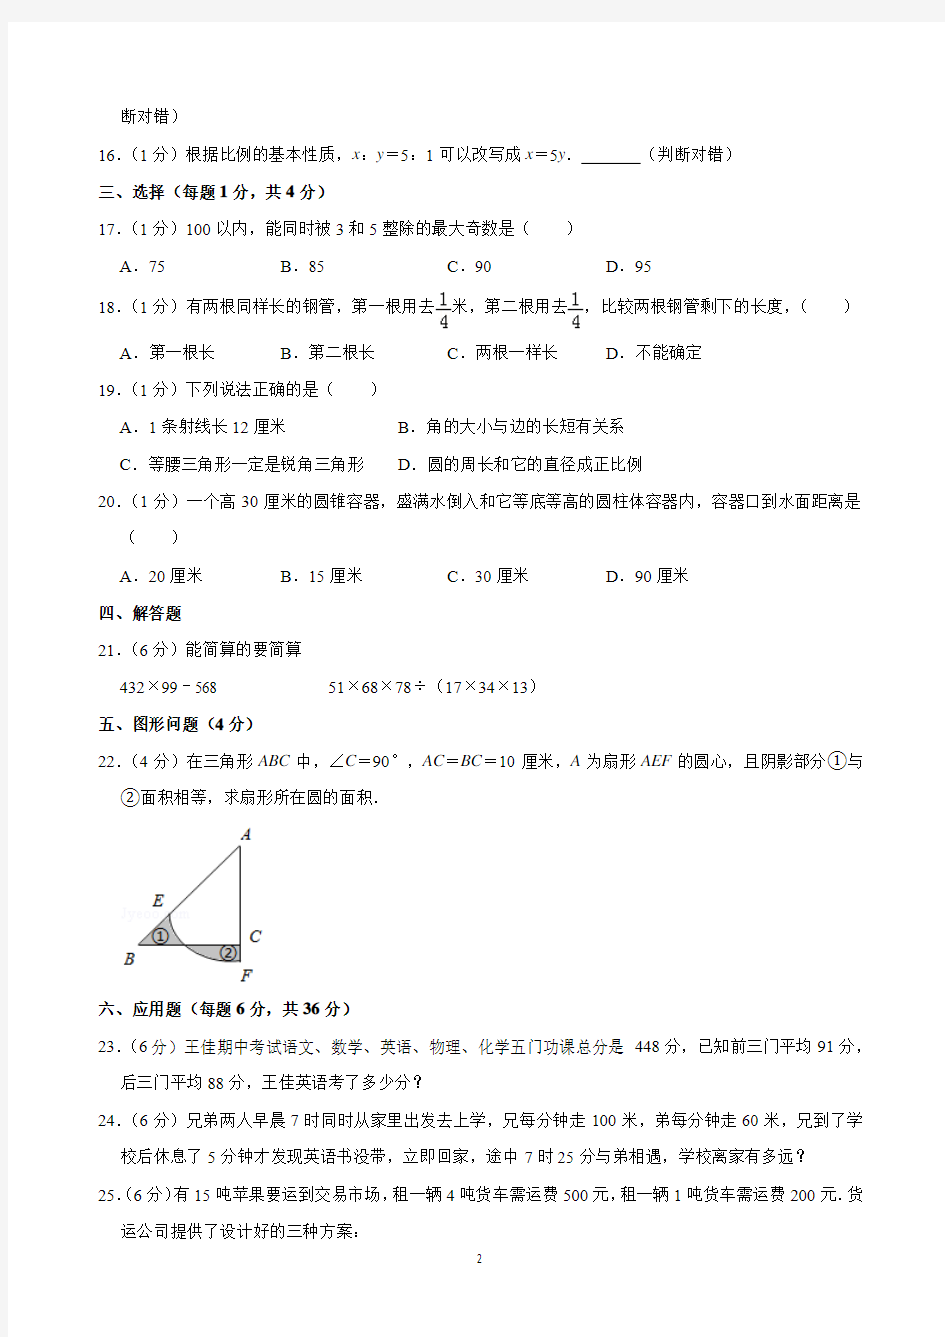 石家庄精英中学2019年小升初招生考试数学试卷(含解析)印刷版